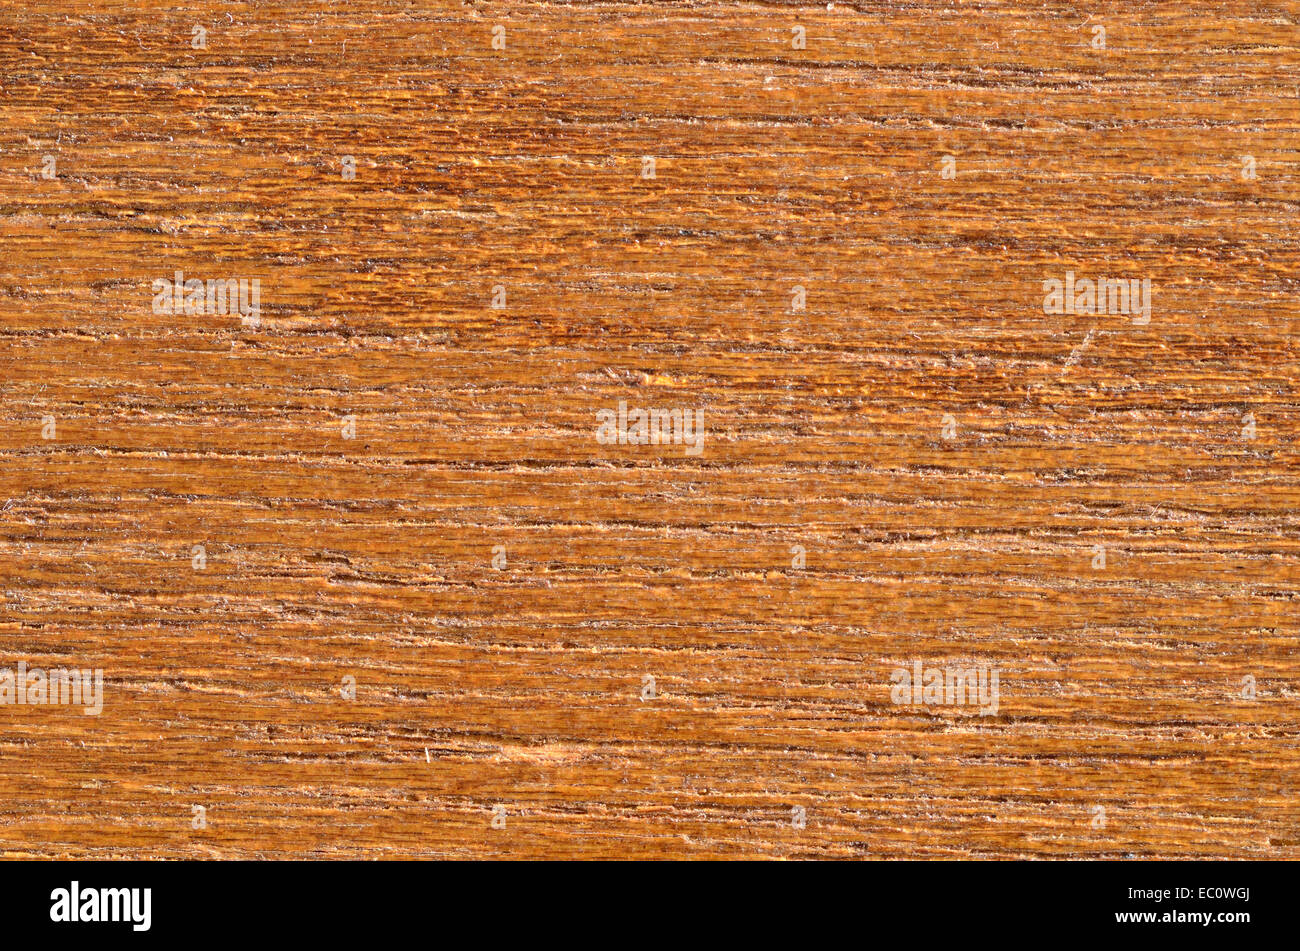 Ein Makro Nahaufnahme der Maserung des Holzes für den Hintergrund oder Kopie. Stockfoto